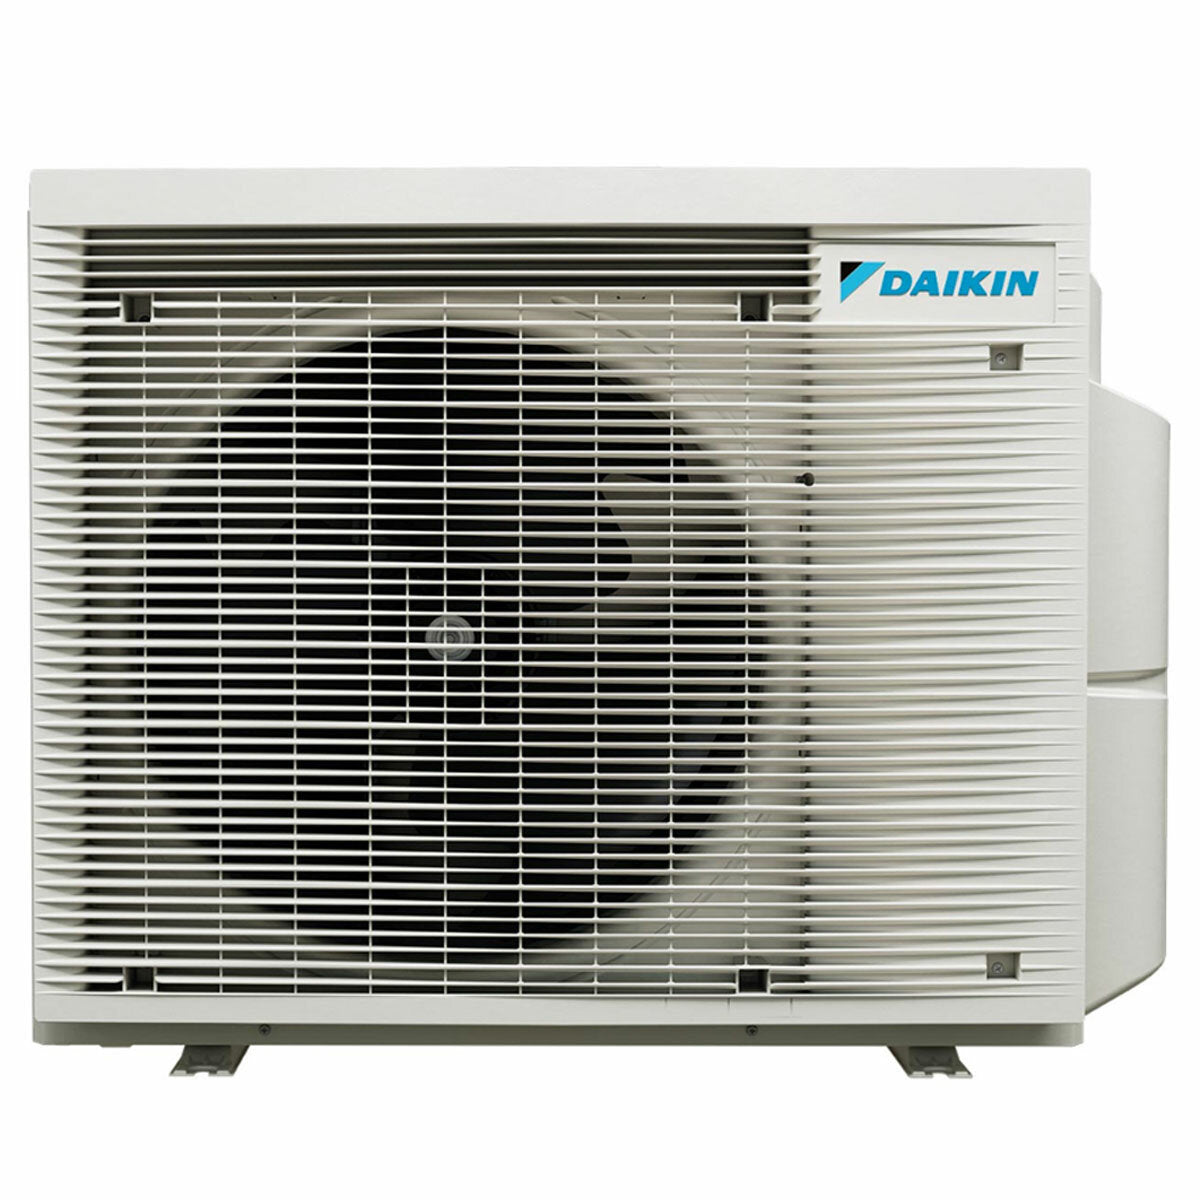 Daikin Emura 3 trial split air conditioner 9000+12000+12000 BTU inverter A+ wifi outdoor unit 6.8 kW Silver